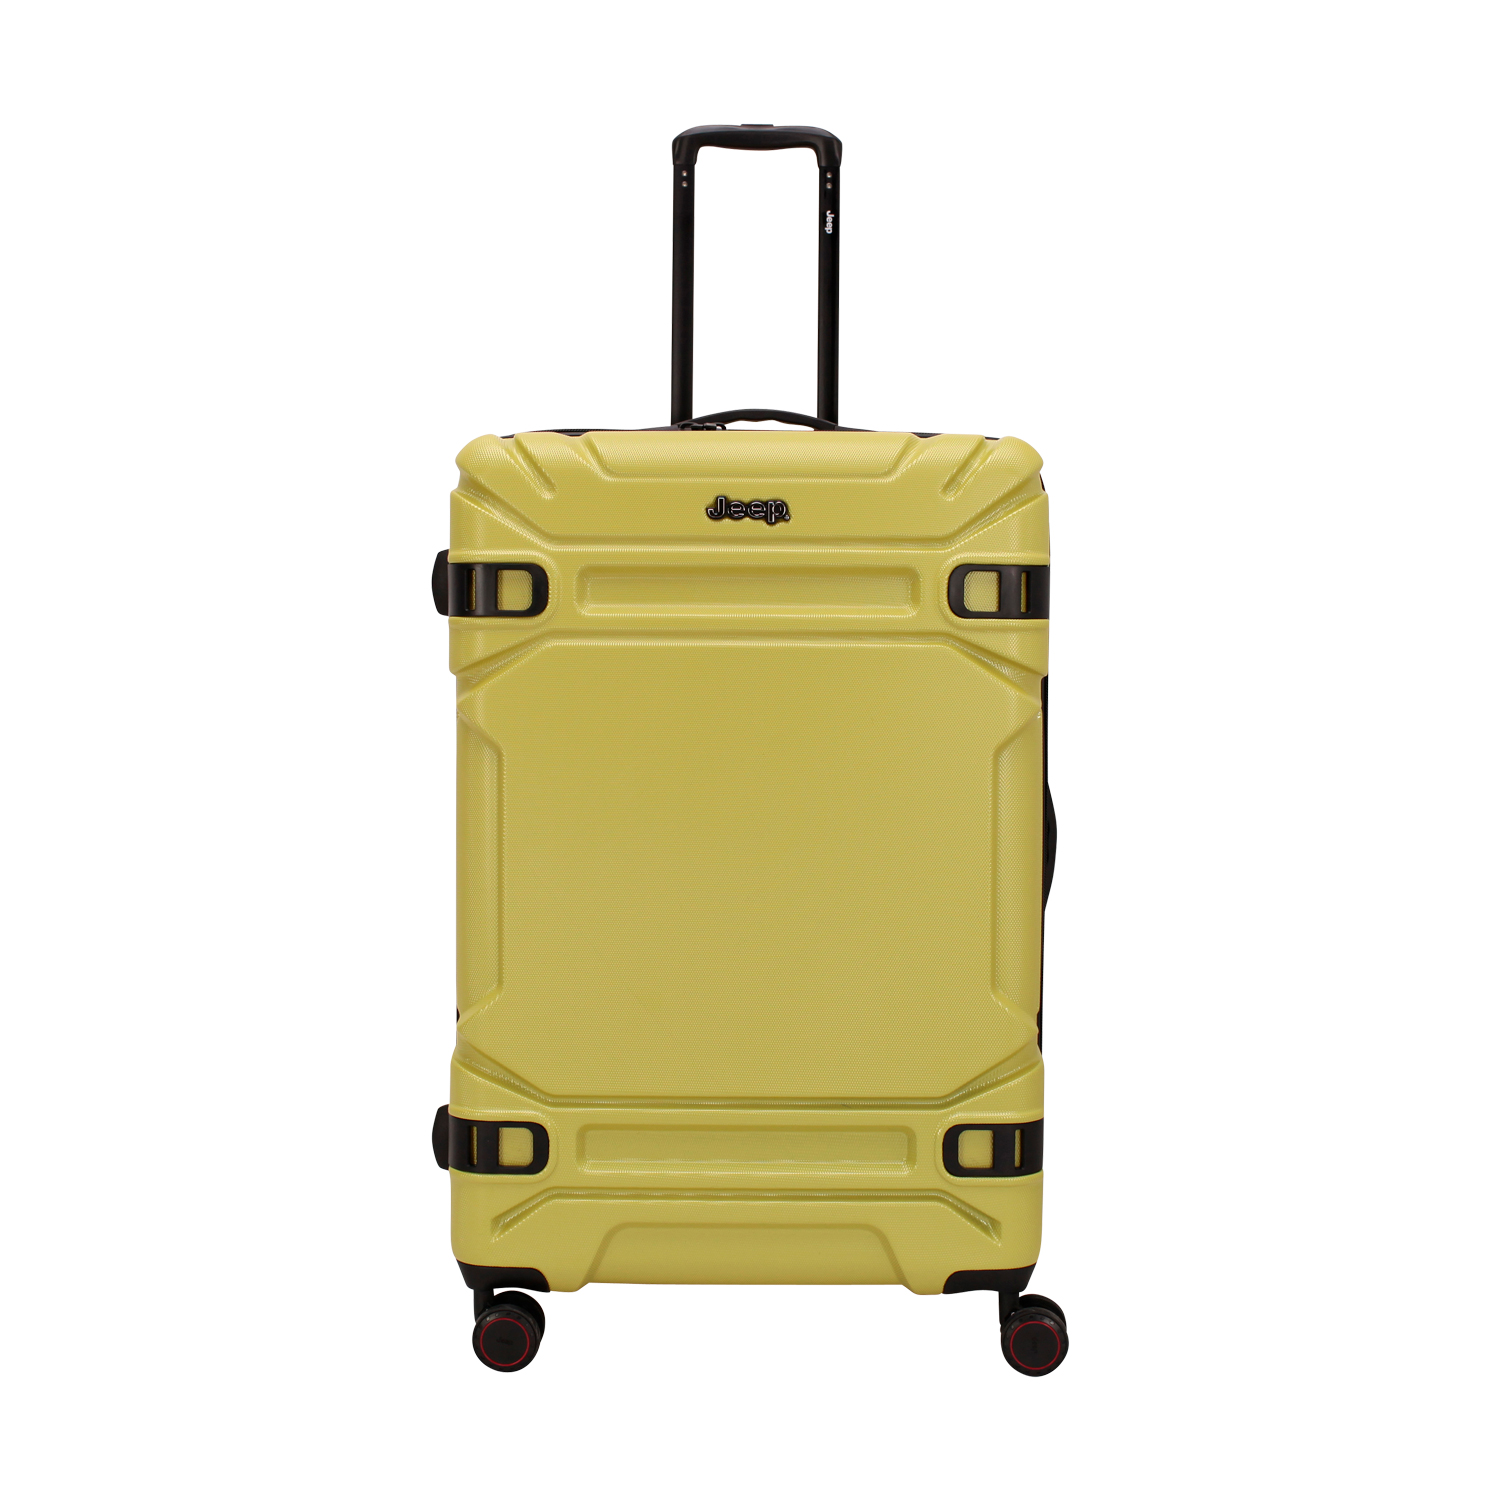 Alpine Large Expandable Luggage